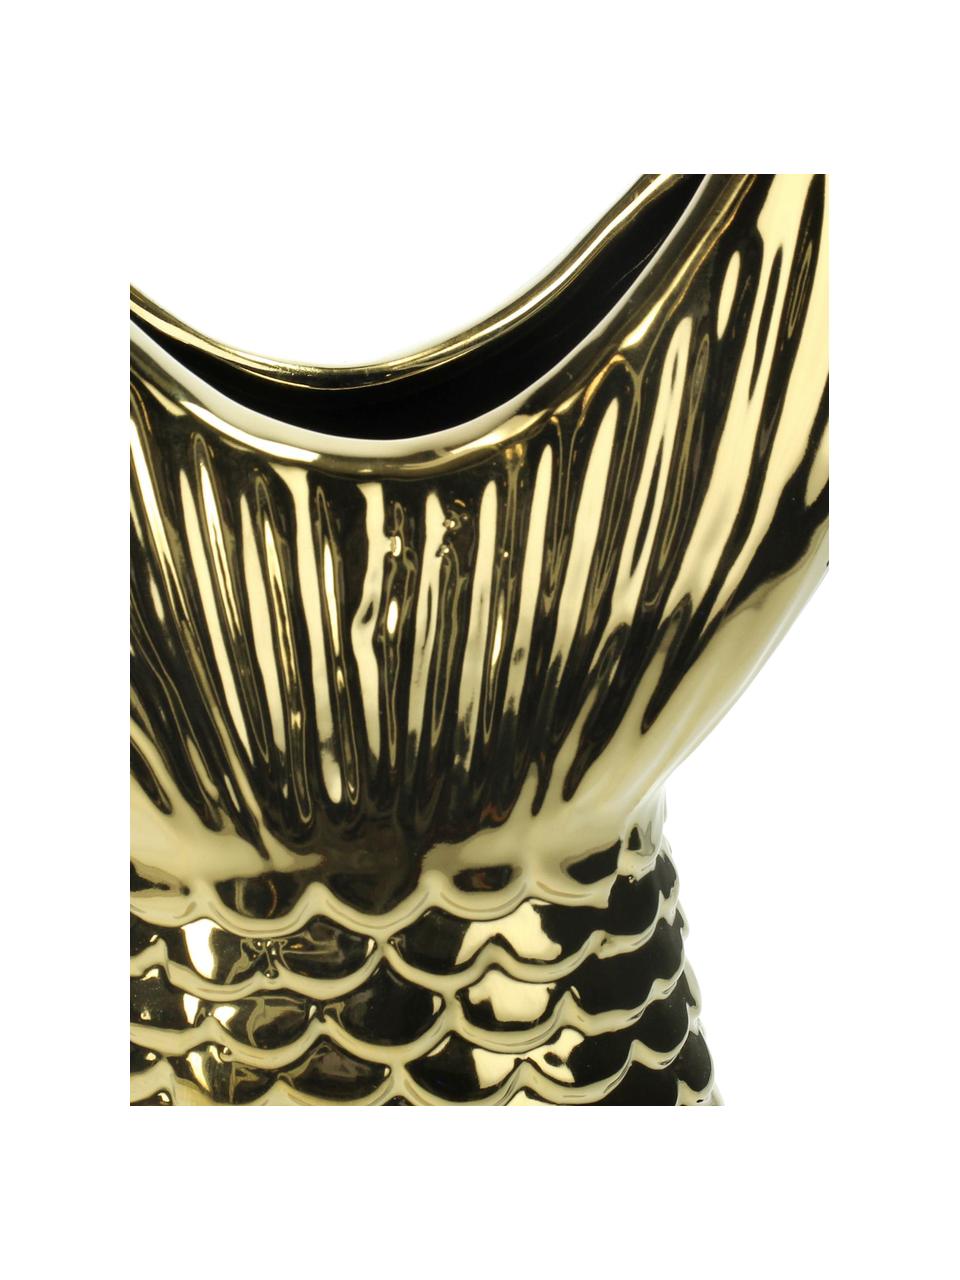 Vase Fishtail aus Steingut, Steingut, Goldfarben, 14 x 28 cm